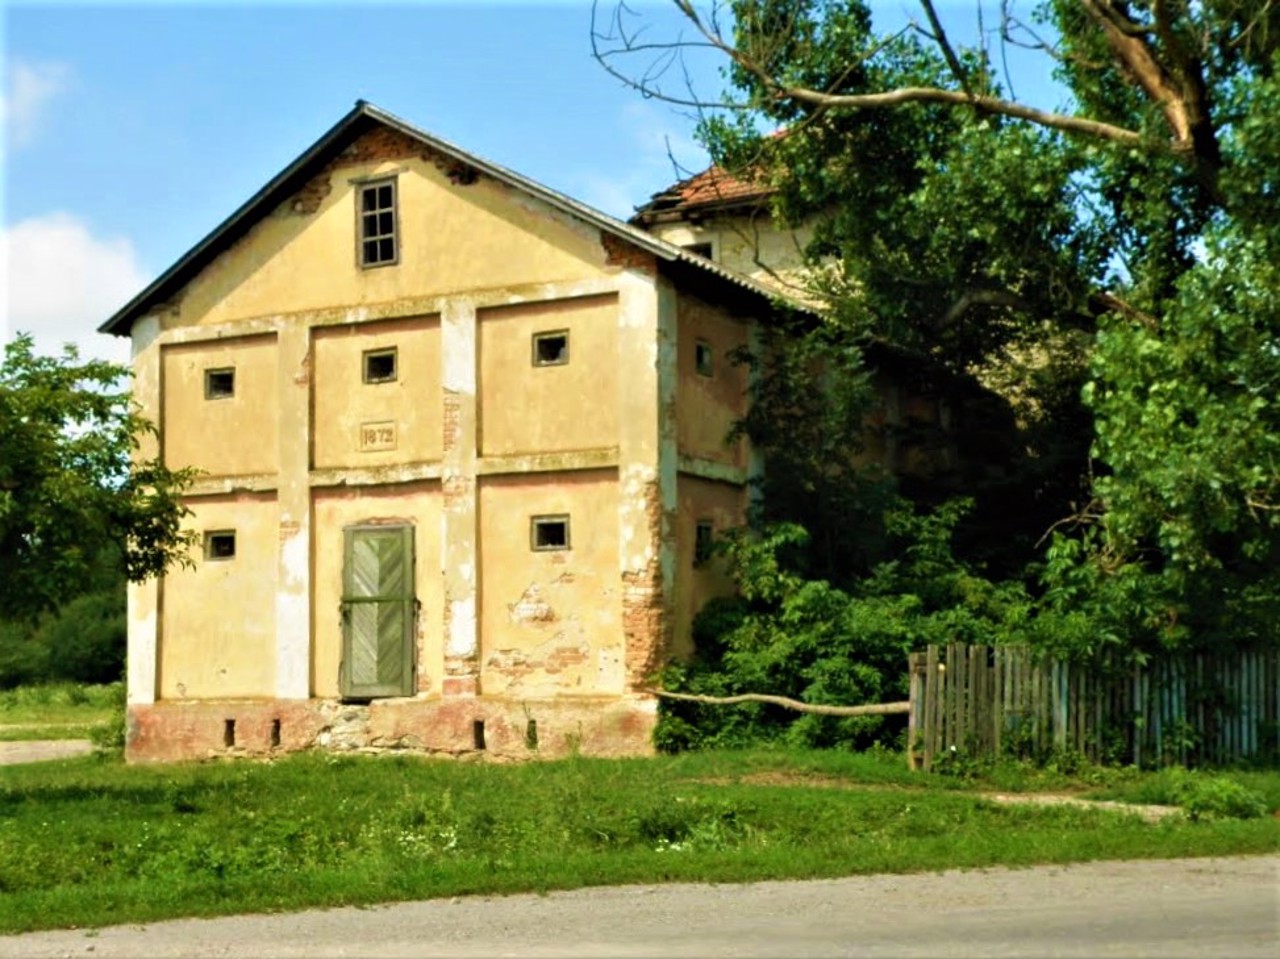 Losiach village